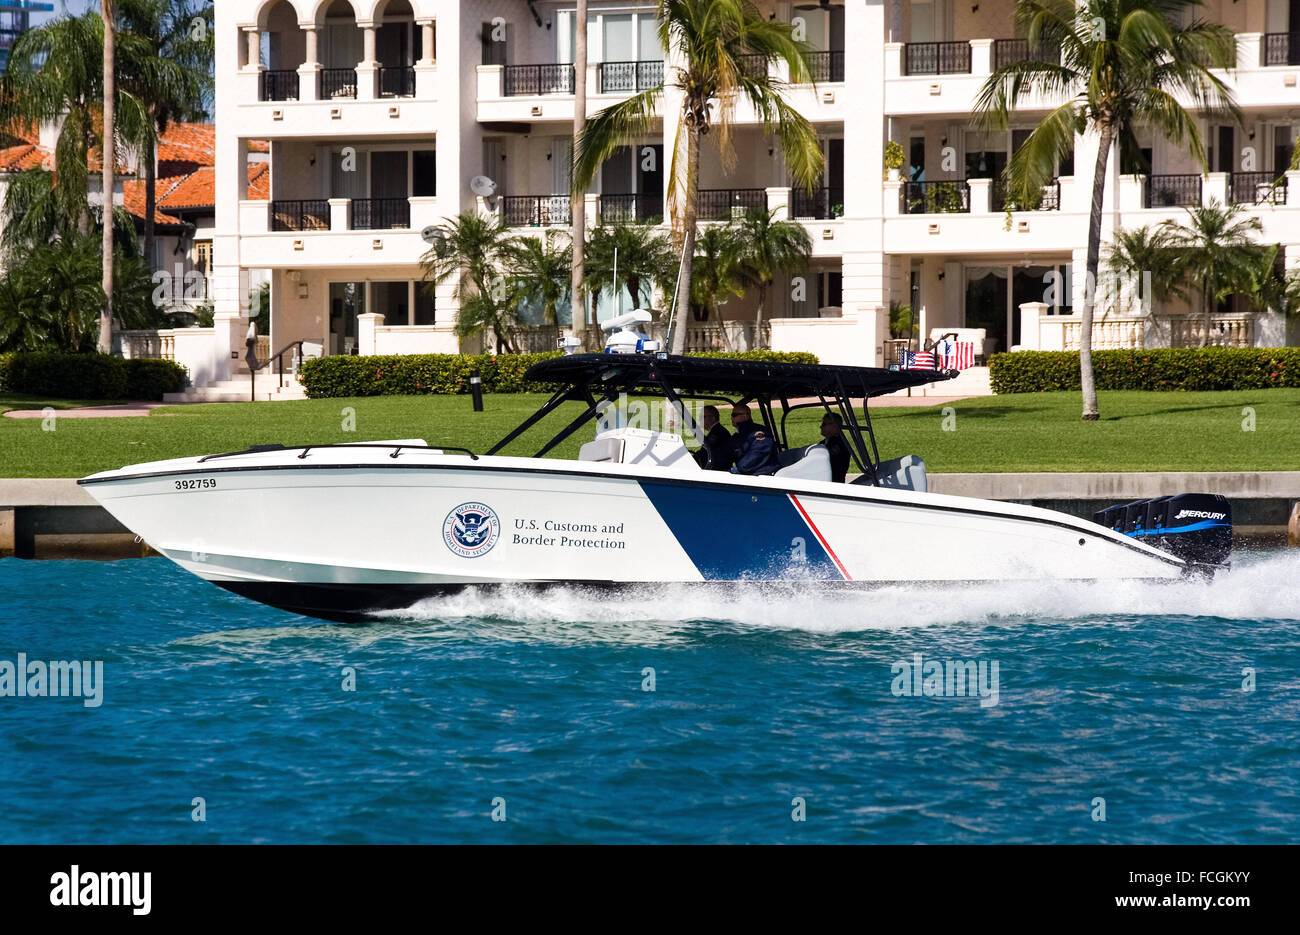 US Customs and Border Protection Marine unità operativa un 1200HP 39' Midnight Express Barca, "la più potente applicazione della legge sulla nave l'acqua oggi" capace di una velocità massima di 60 nodi, mostrato qui a Miami in Florida. Vedere la descrizione per maggiori informazioni. Foto Stock